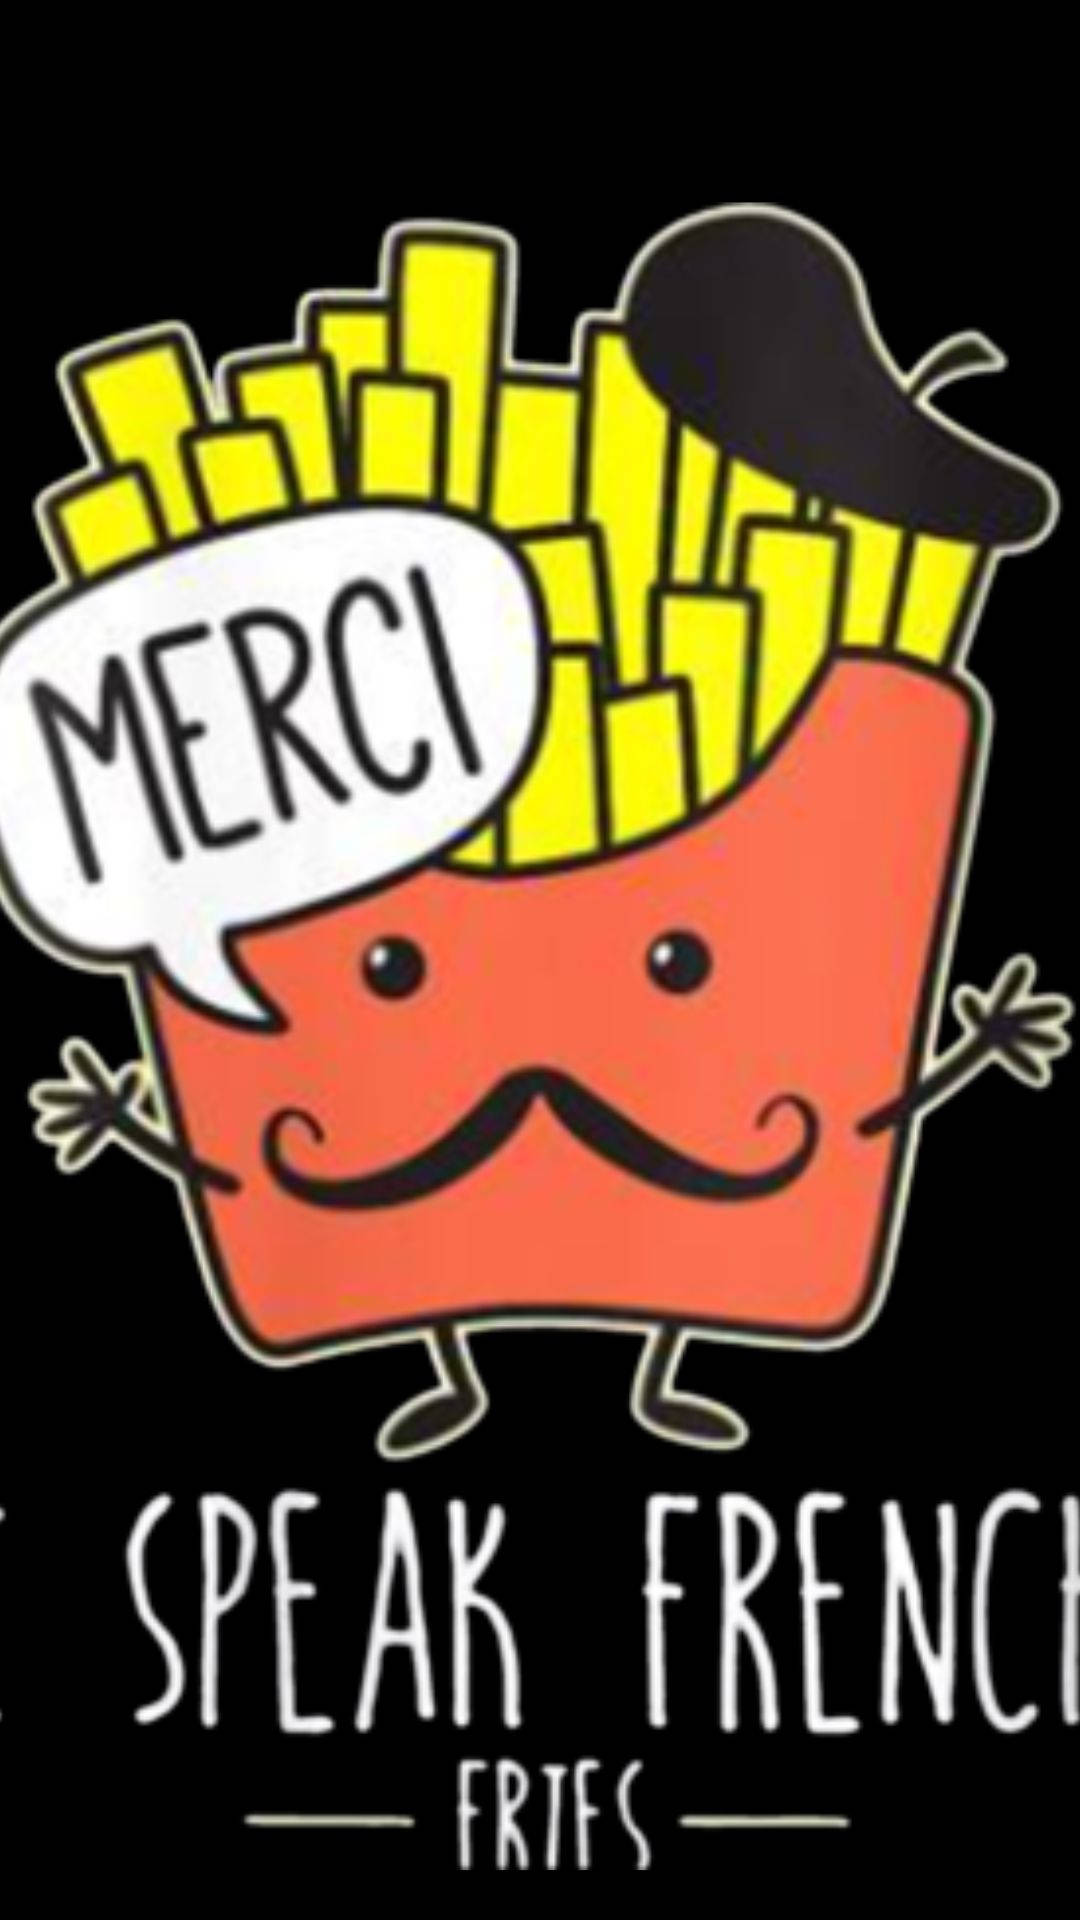 Speak French Fries